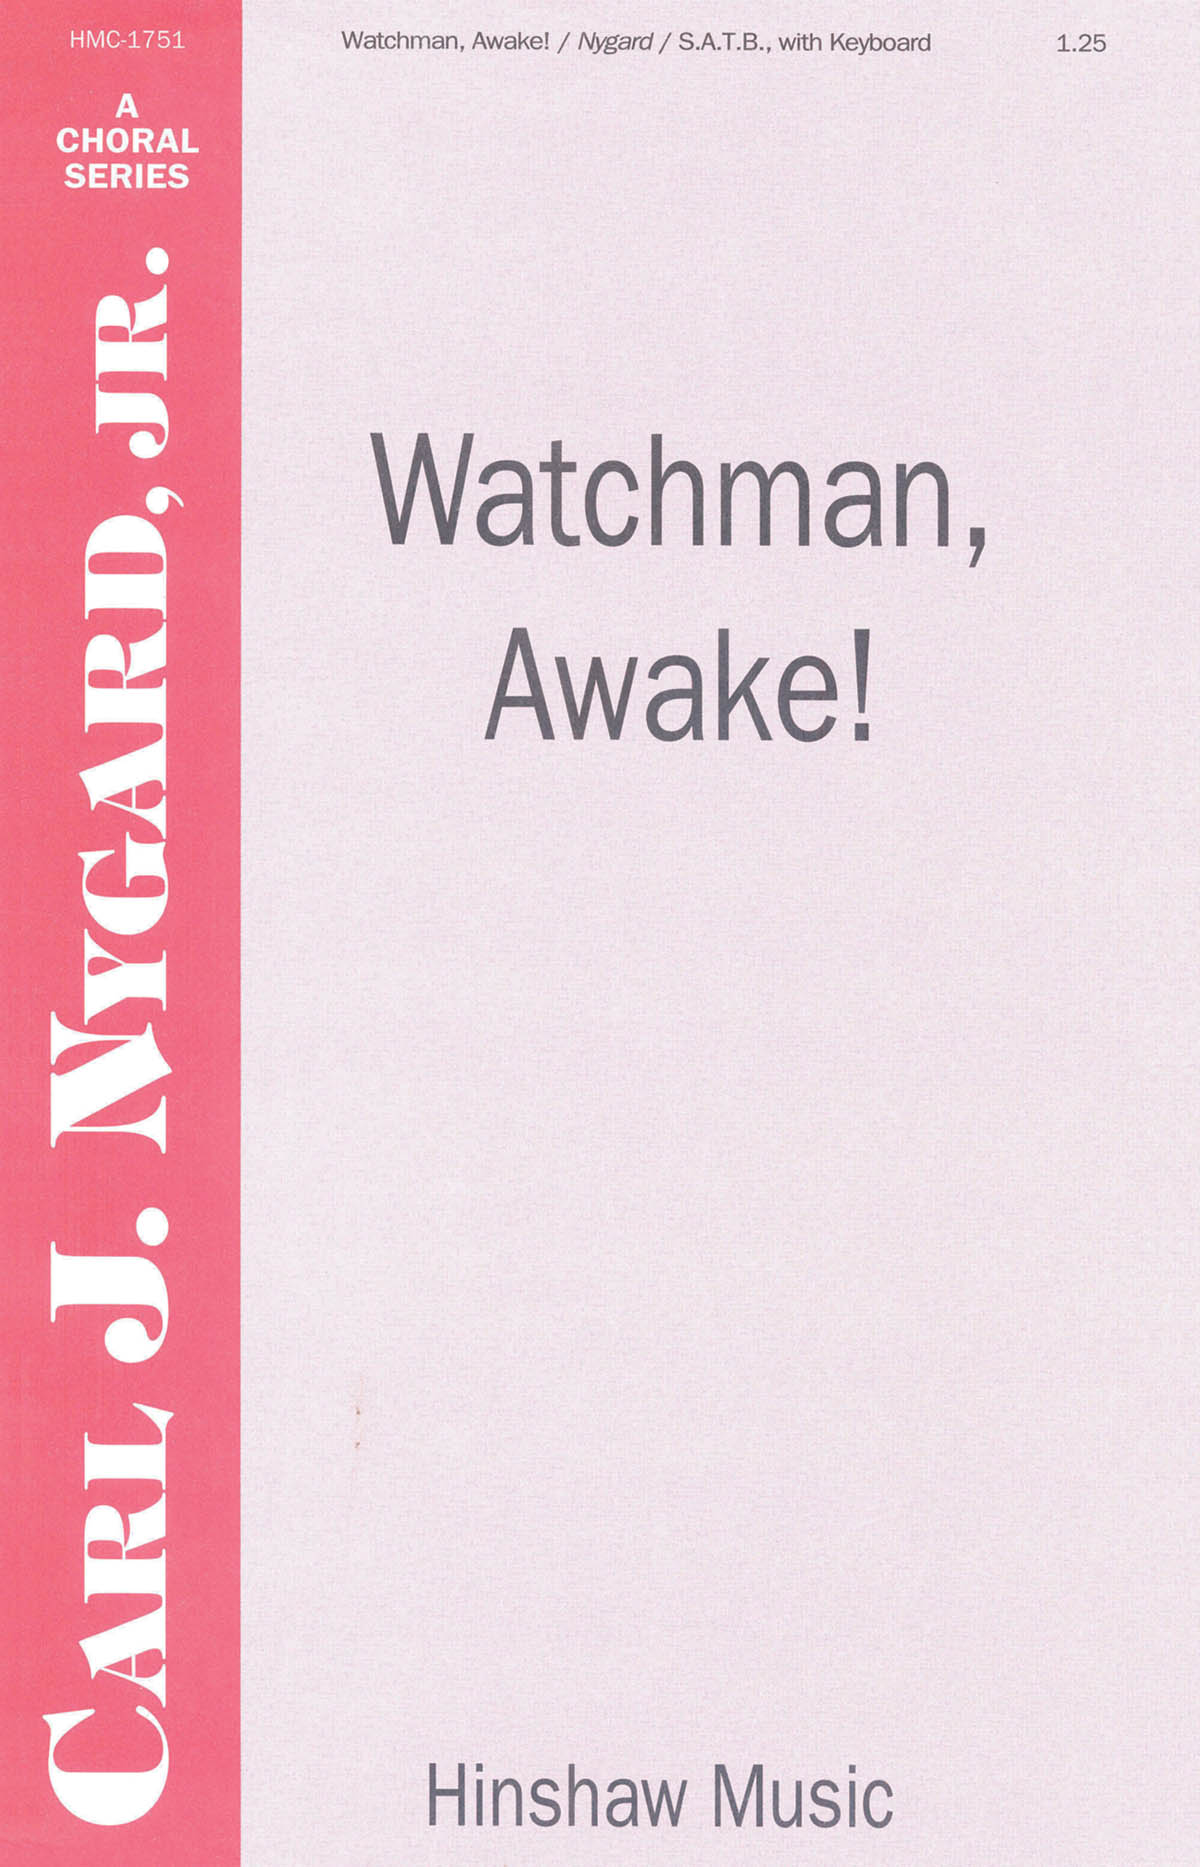 Watchman, Awake